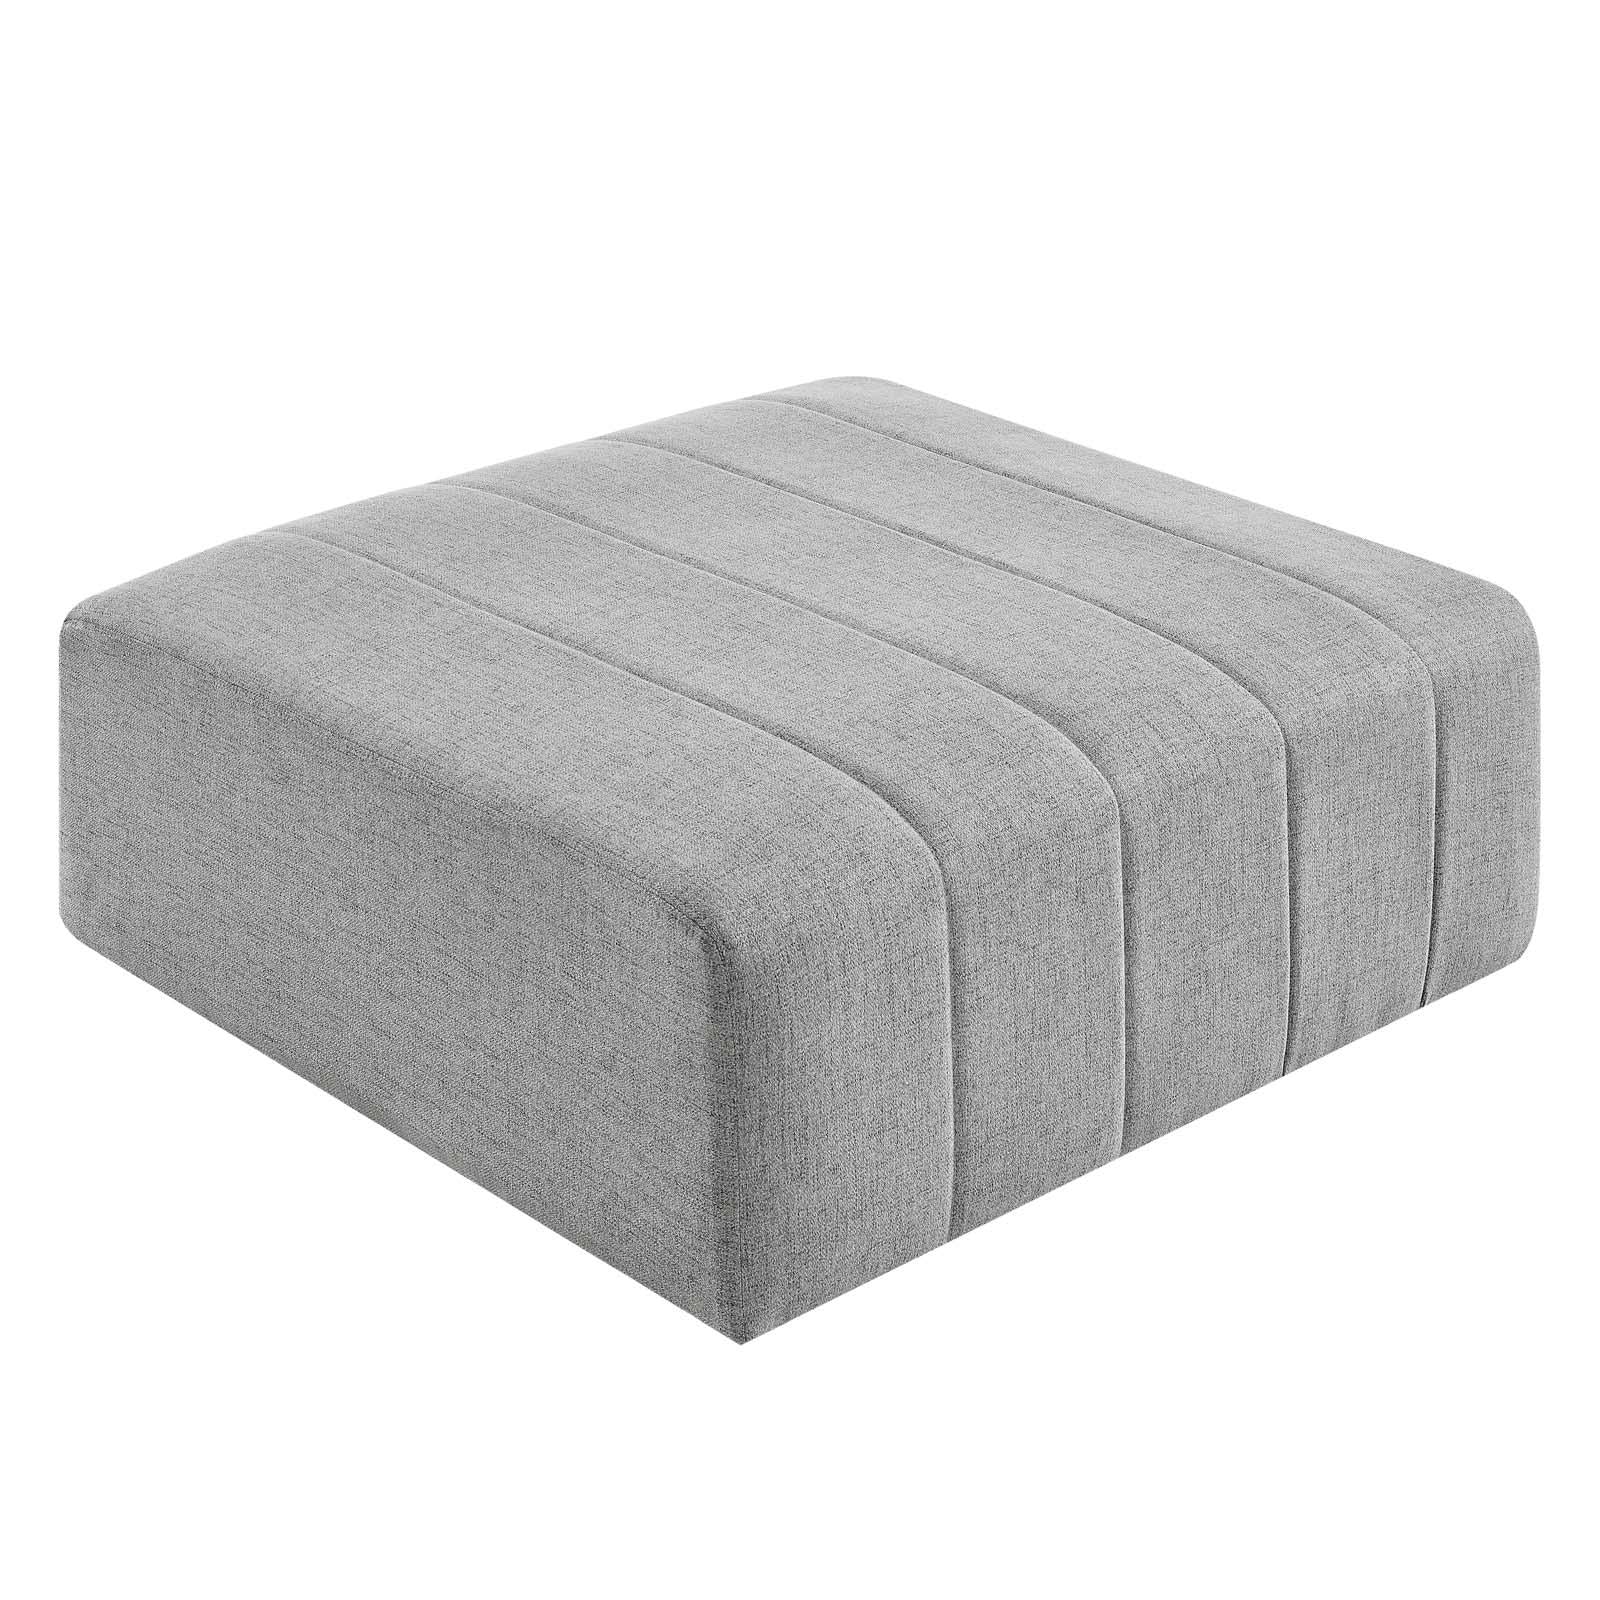 Modway Furniture Modern Bartlett Upholstered Fabric 4-Piece Sectional Sofa - EEI-4516